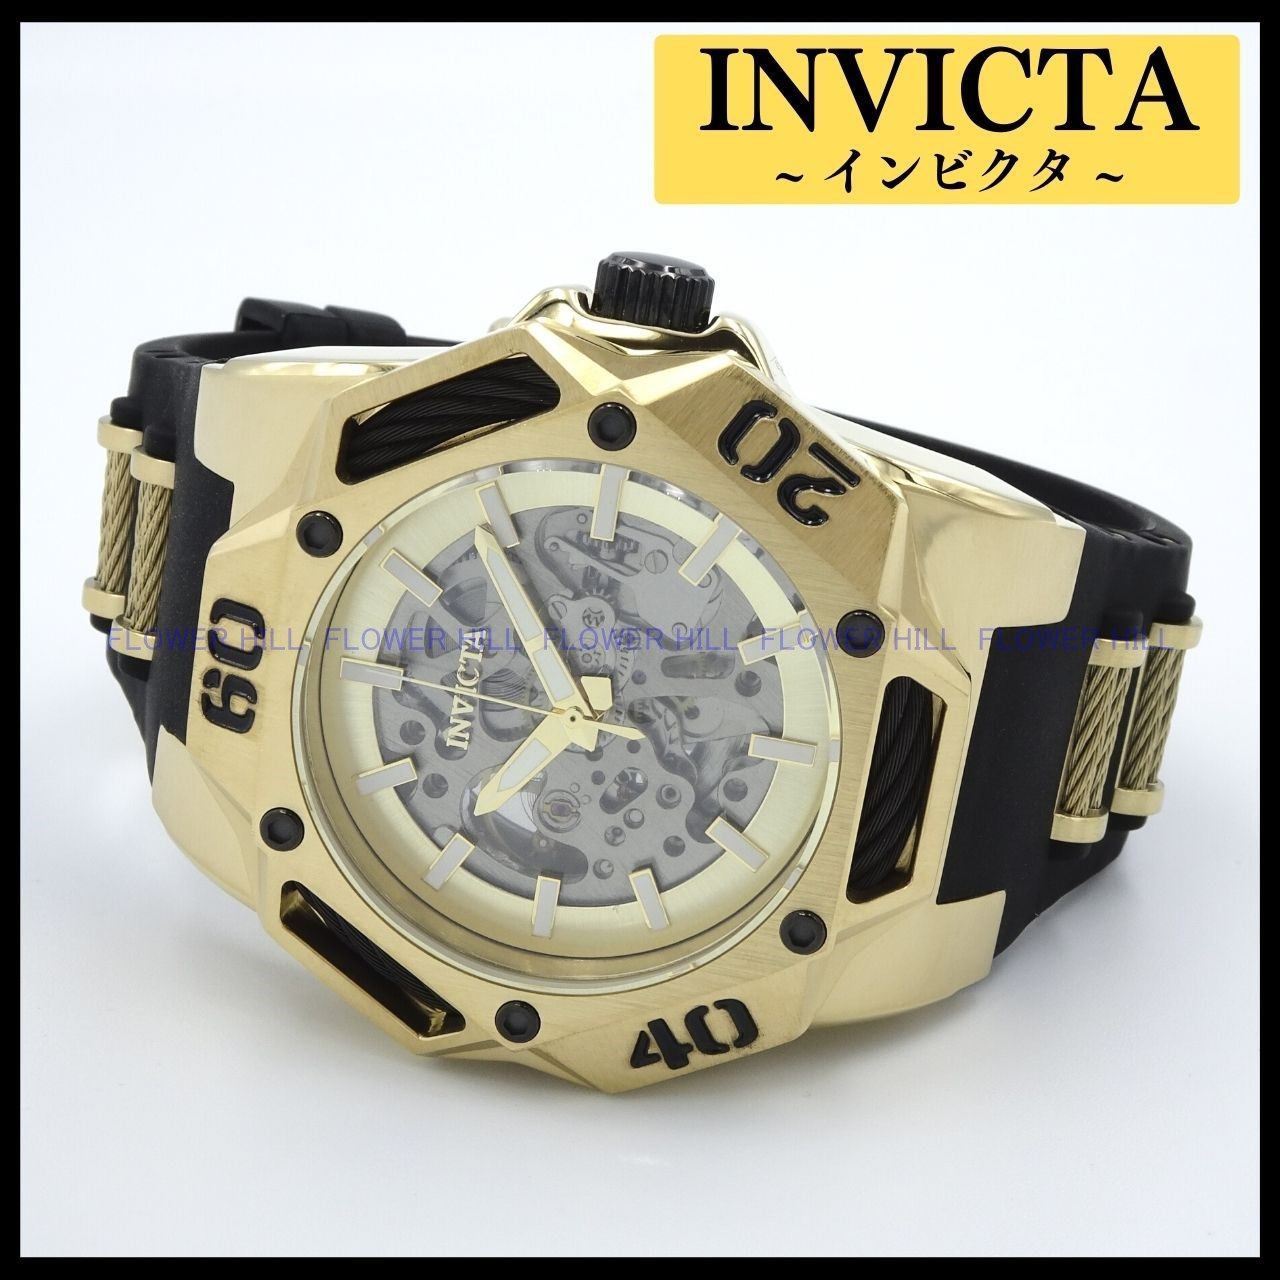 INVICTA インビクタ 腕時計 メンズ 自動巻き スケルトン COALITION FORCES 44081 ブラック・ゴールド シリコンバンド